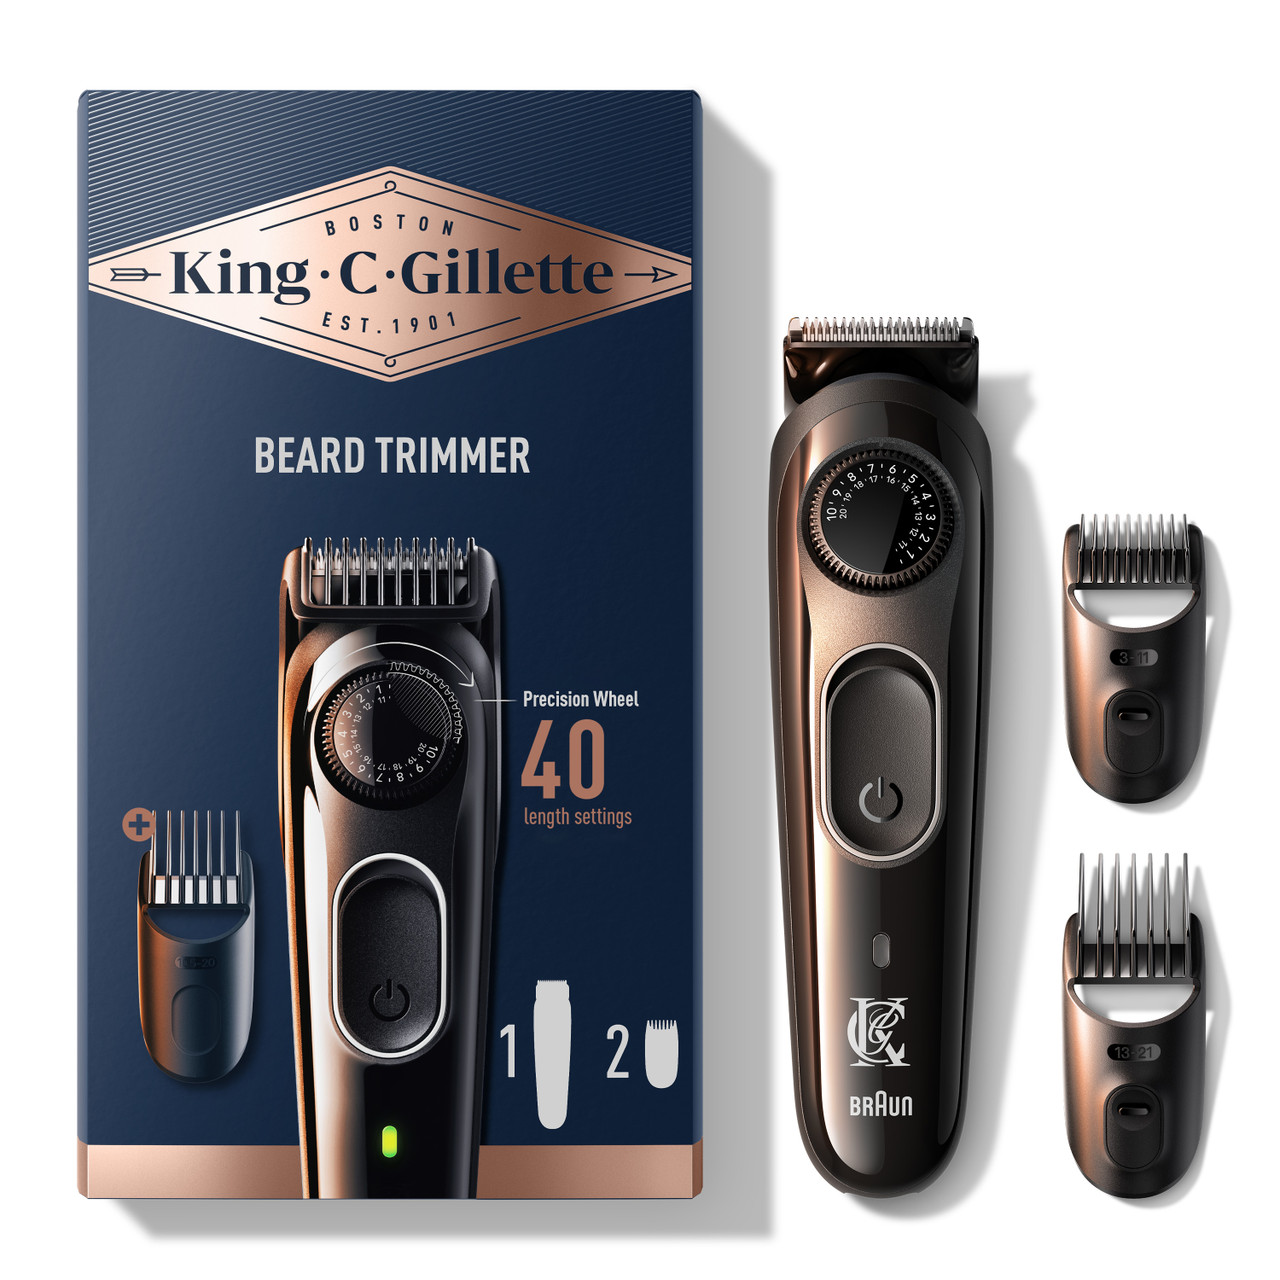 King C. Gillette Beard Trimmer